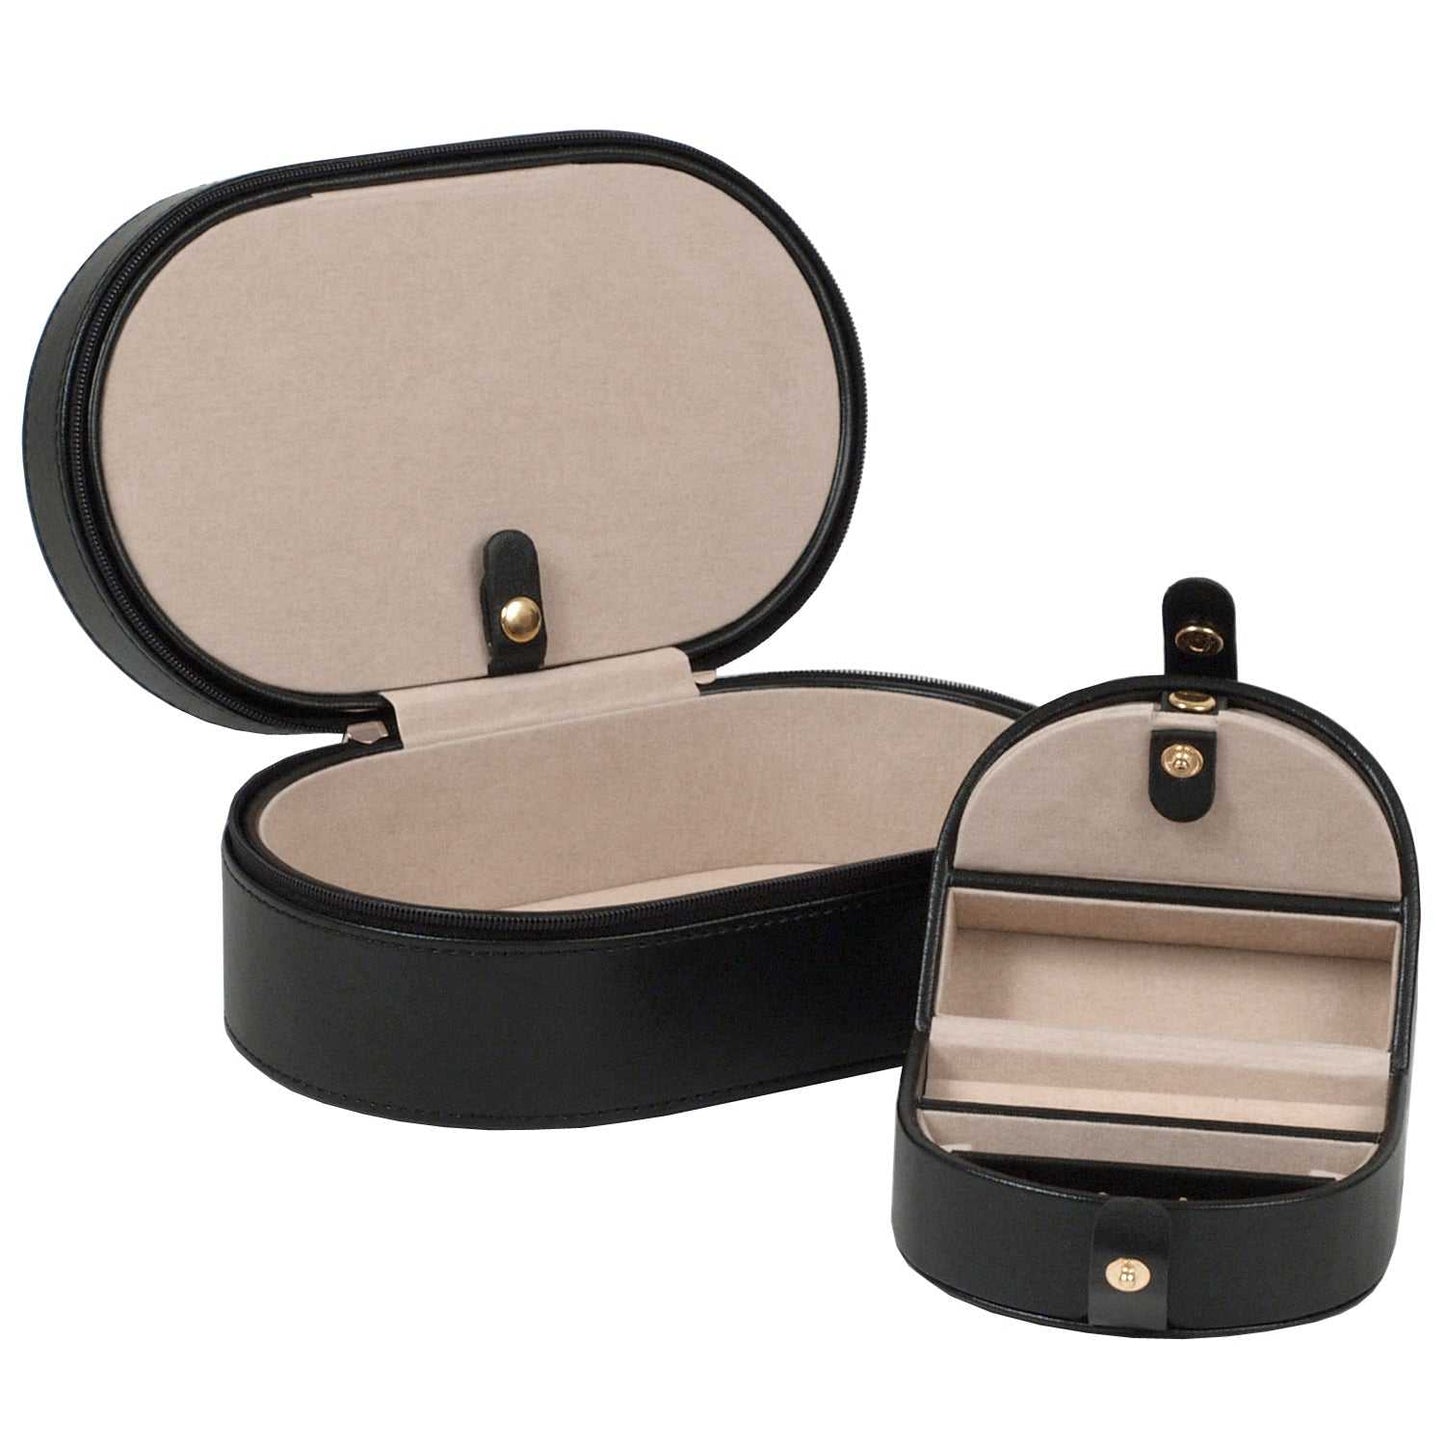 Watch Avenue UKJewellery BoxWolf Heritage Oval Zip Case Jewellery Box Black 280602Watch Avenue UK